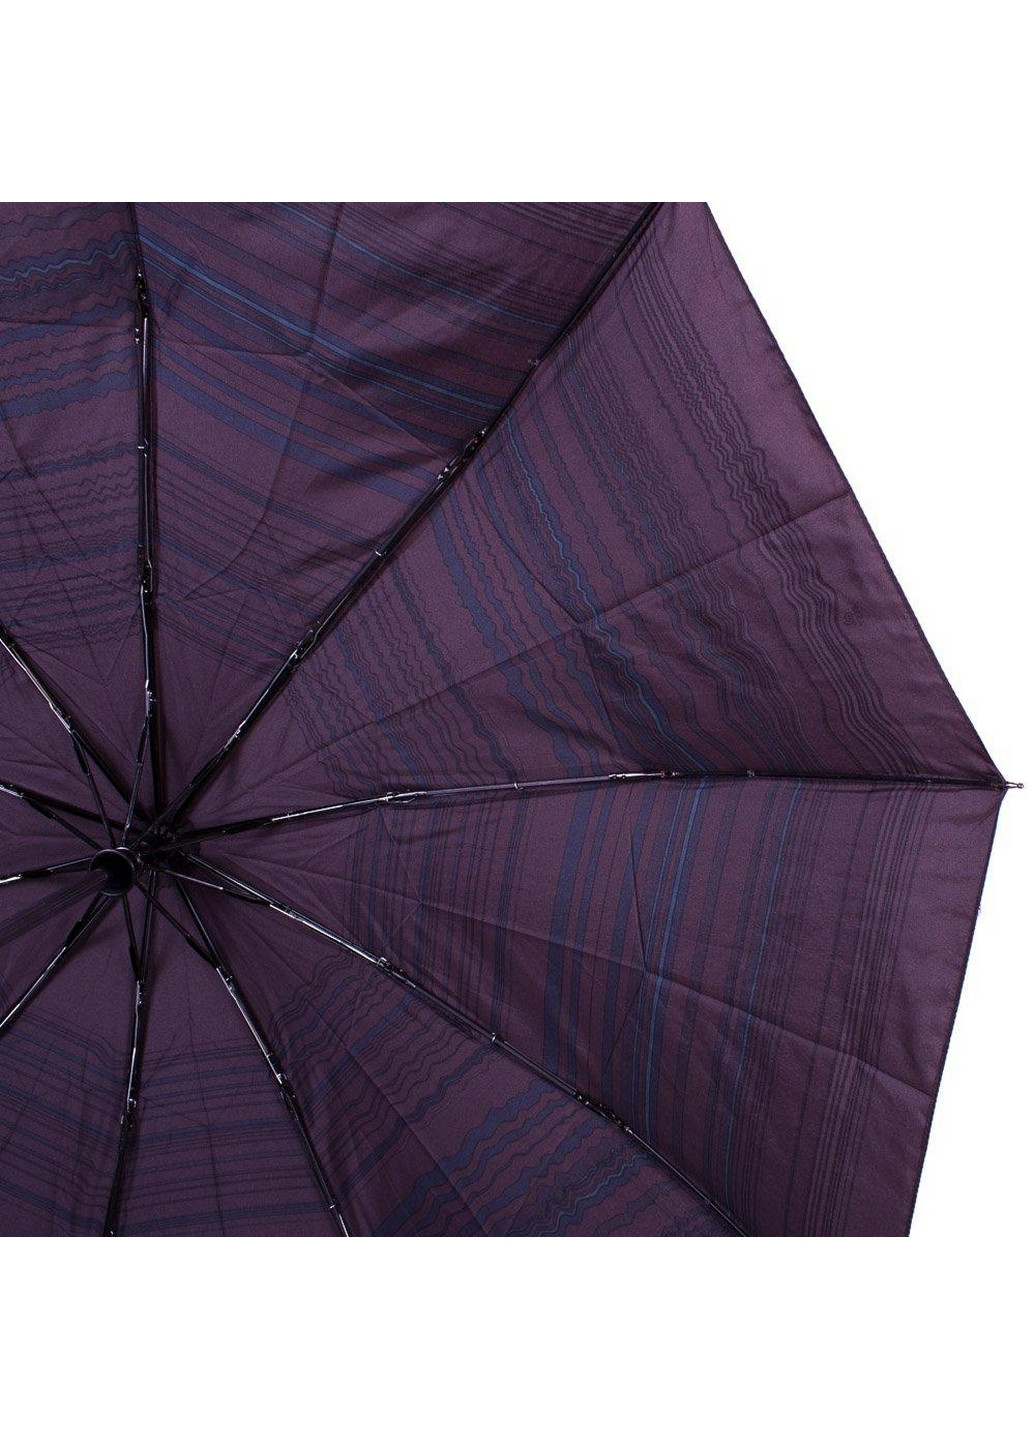 Мужской складной зонт полуавтомат 108,5 см Zest (260330028)